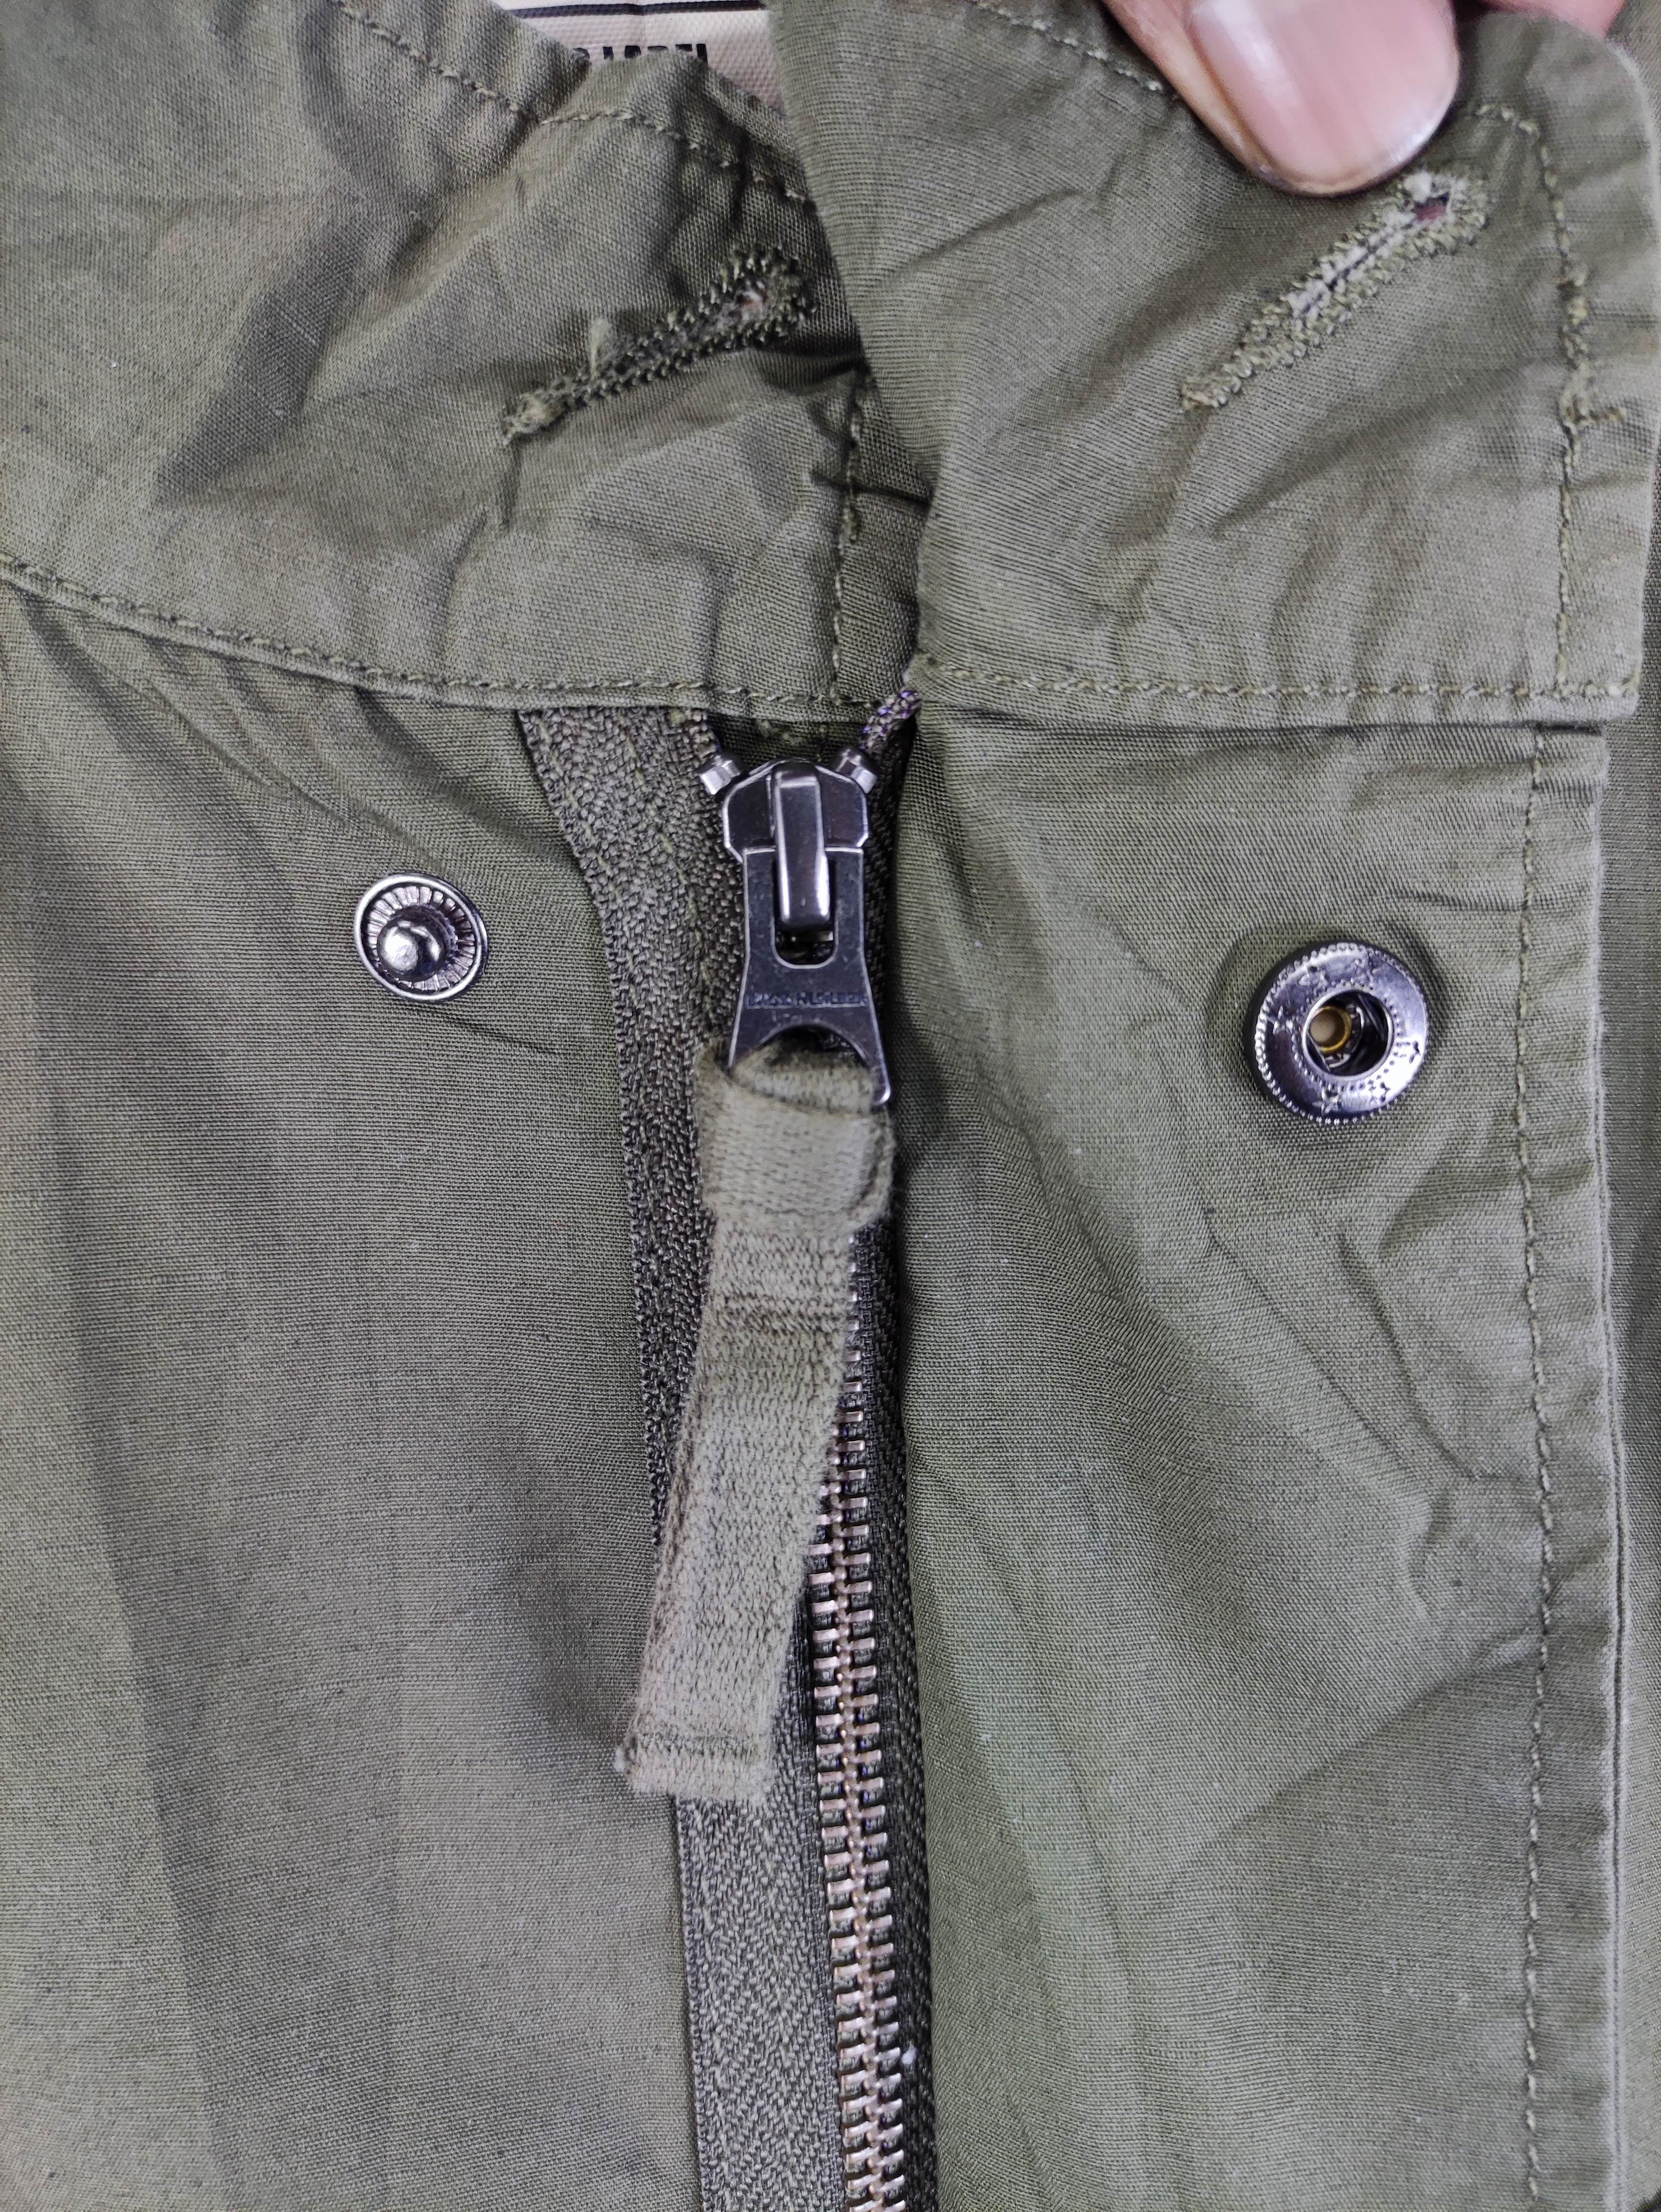 Japanese Brand - Vintage Back Number Fishtail Parka Jacket Zipper - 3